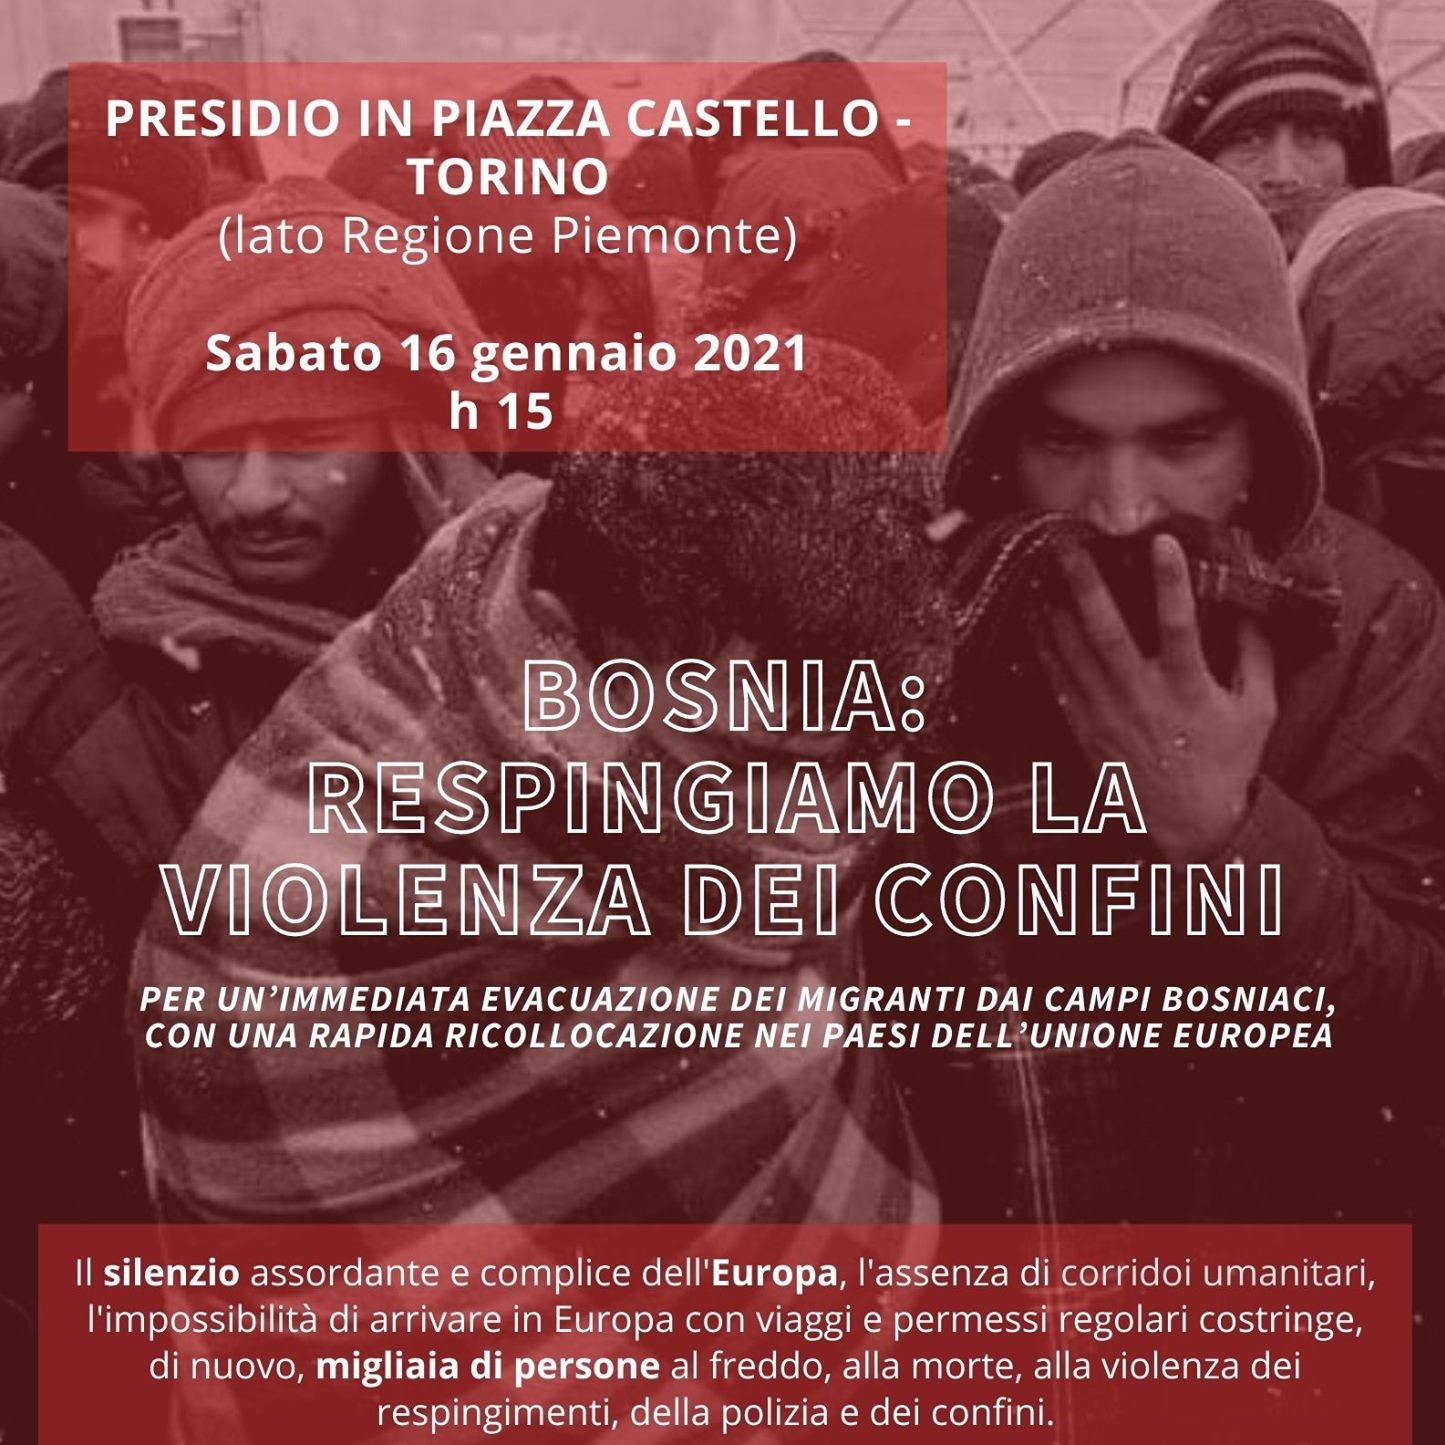 PRESIDIO IN PIAZZA CASTELLO (Torino) - BOSNIA: RESPINGIAMO LA VIOLENZA DEI CONFINI